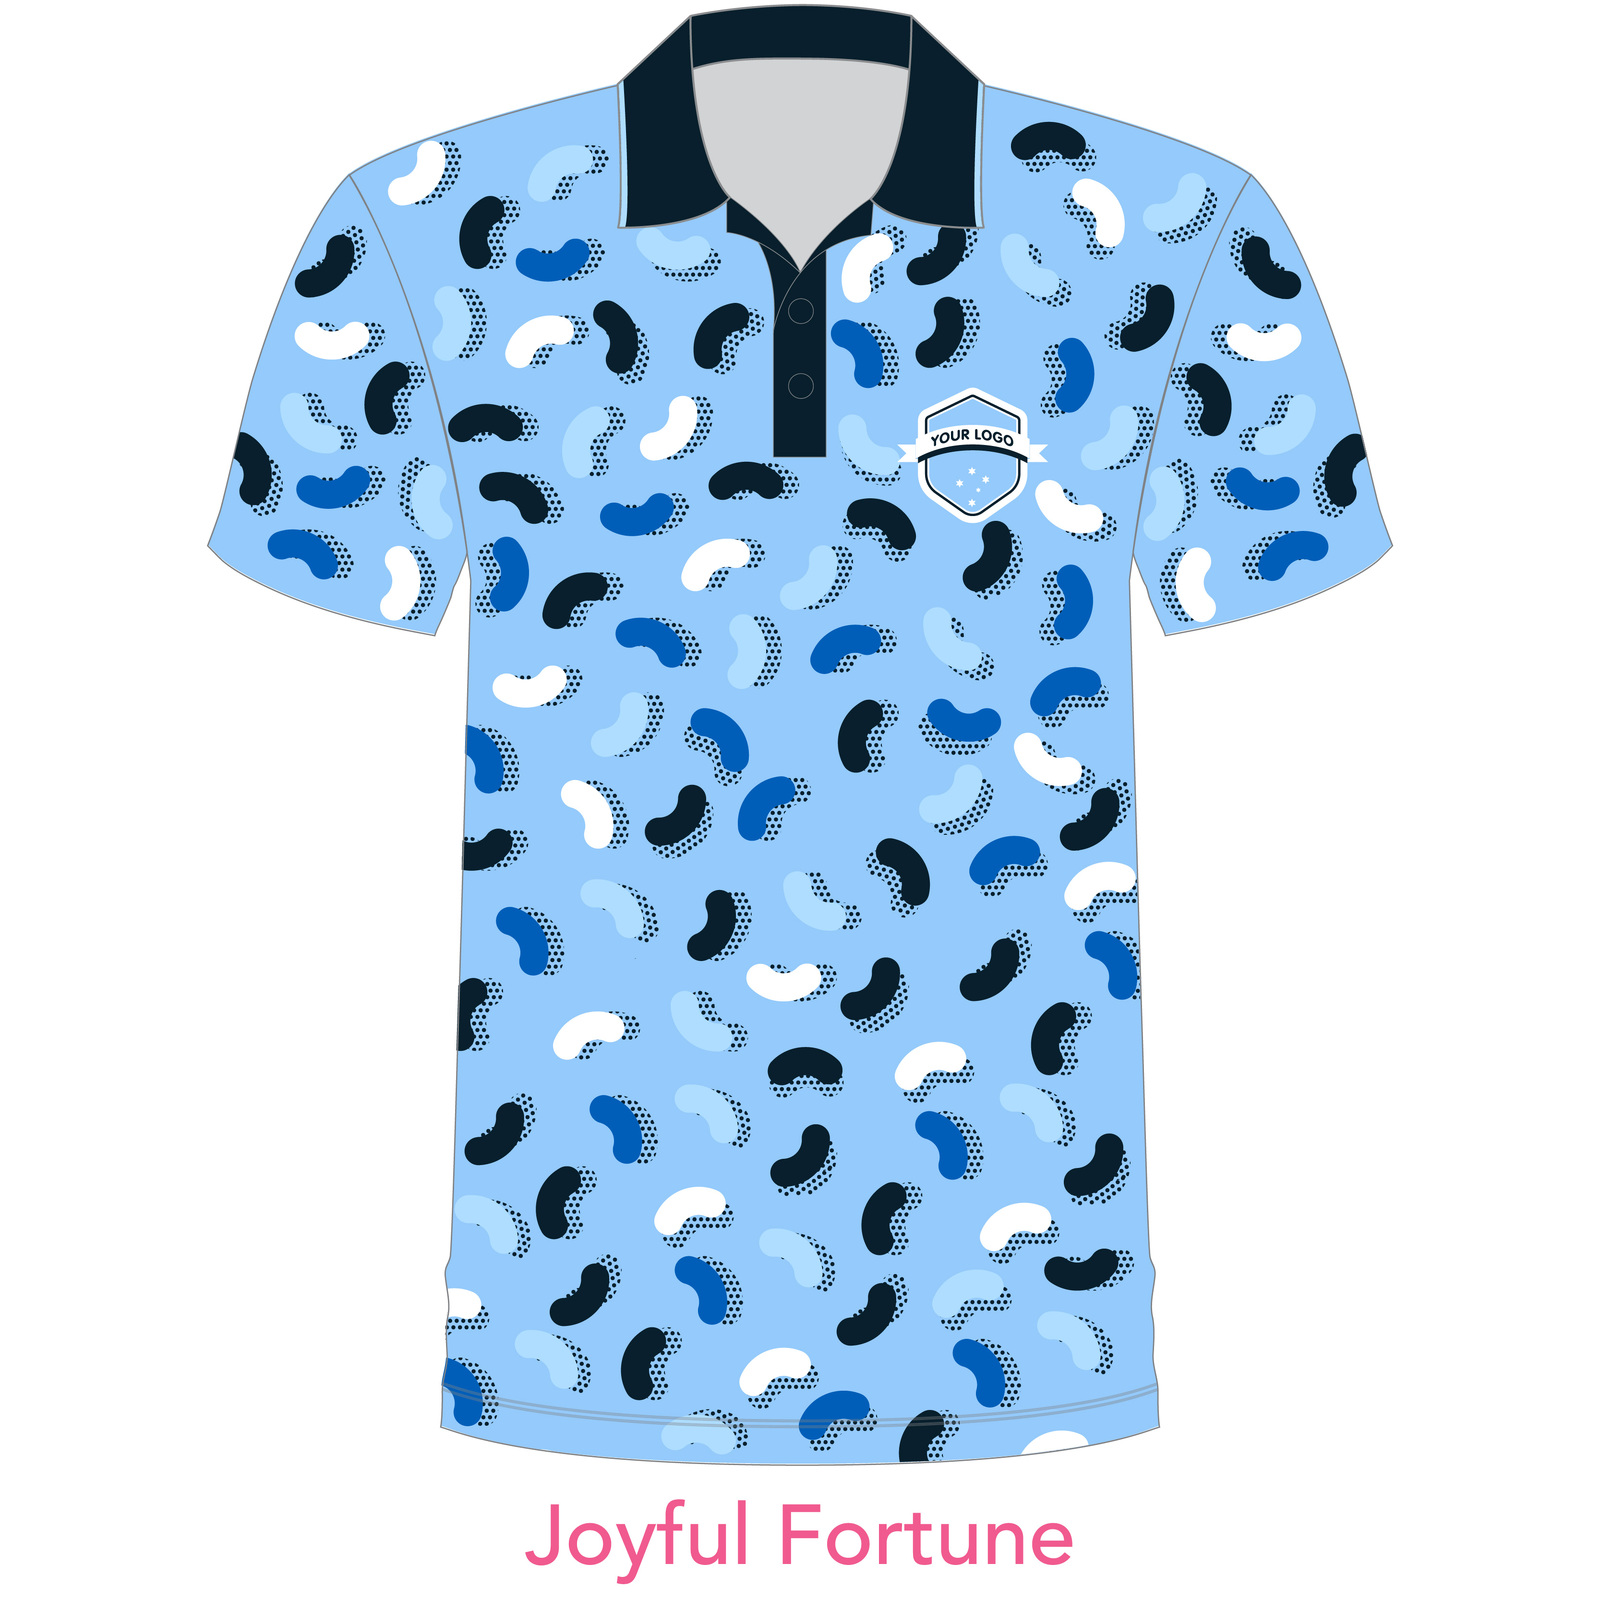 Customised Shirt - Joyful Fortune